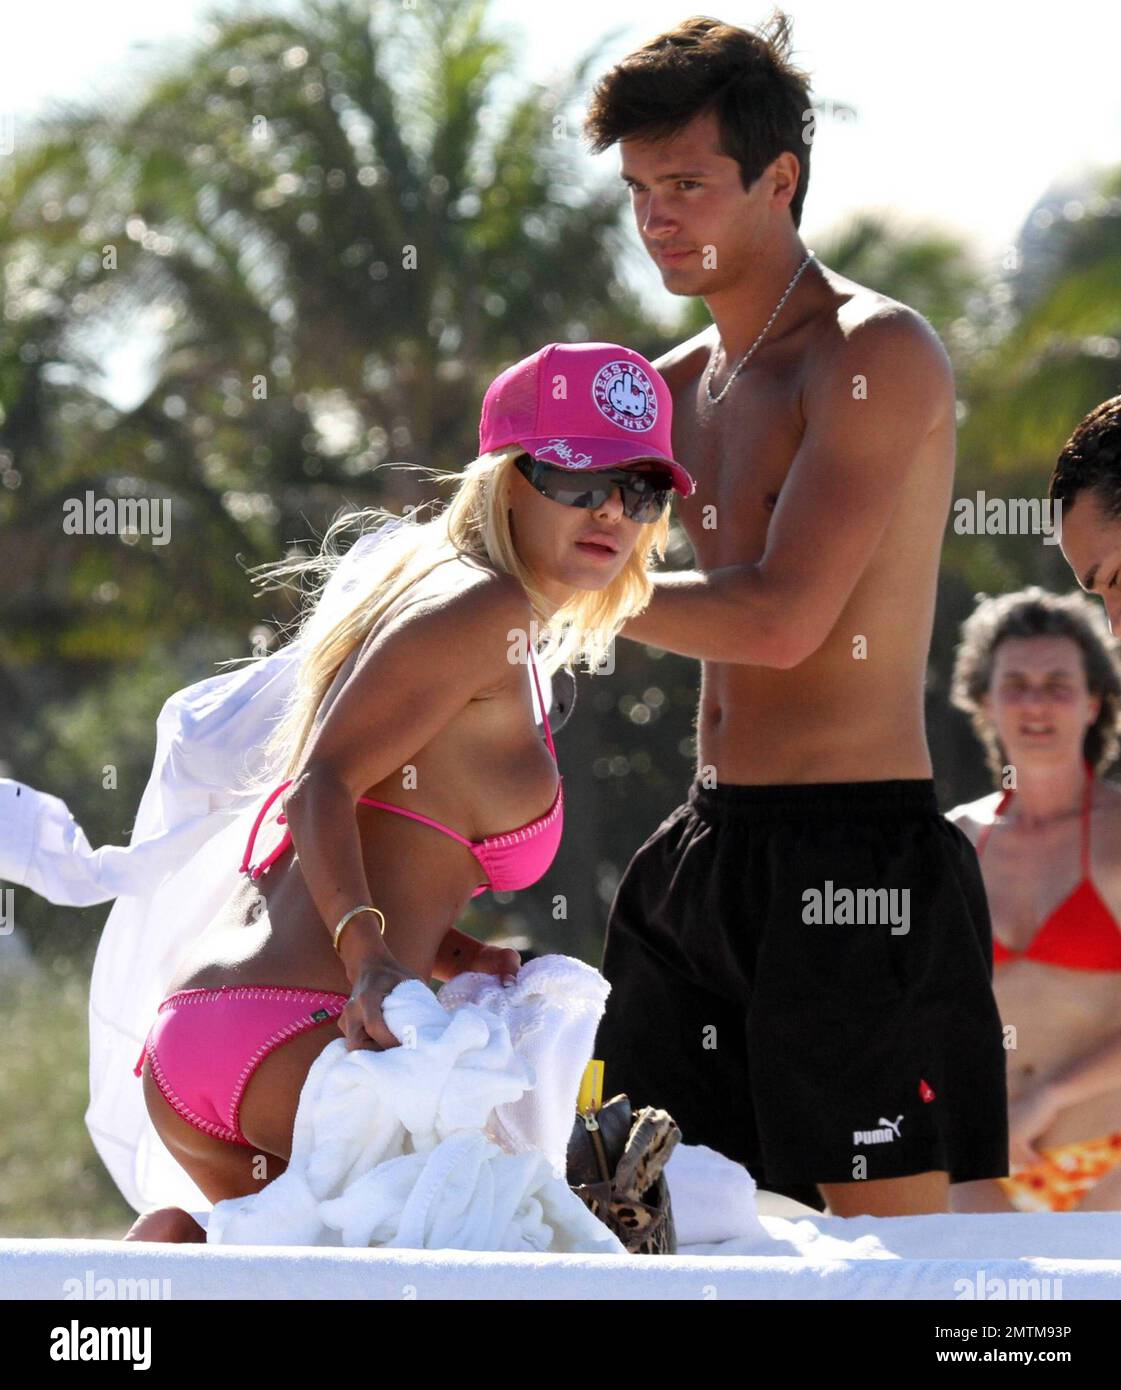 EXCLUSIVO! Shauna Sand muestra su figura en un bonito bikini rosa en South  Beach hoy. Shauna pasó tiempo con dos hombres guapos y se bronceó. Miami,  FL. 4/1/10 Fotografía de stock - Alamy